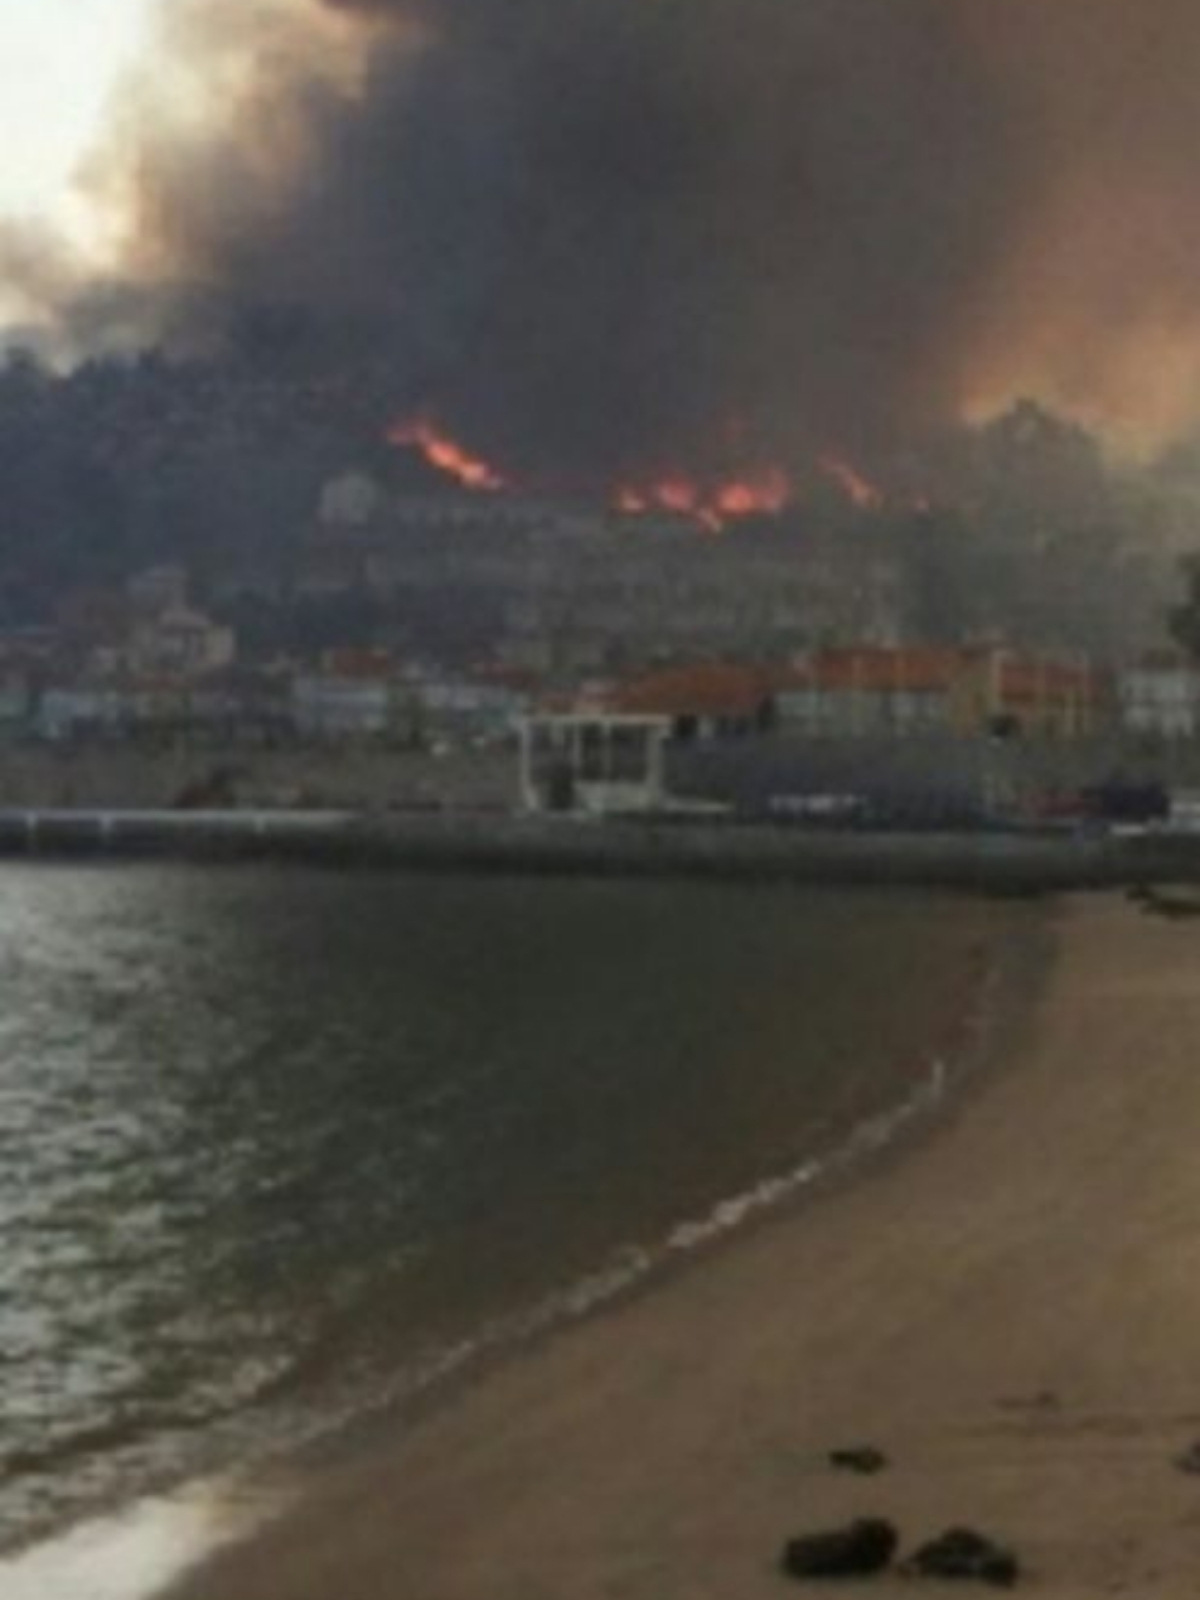 Imagen de los incendios de Galicia en octubre de 2017, vistos desde una playa